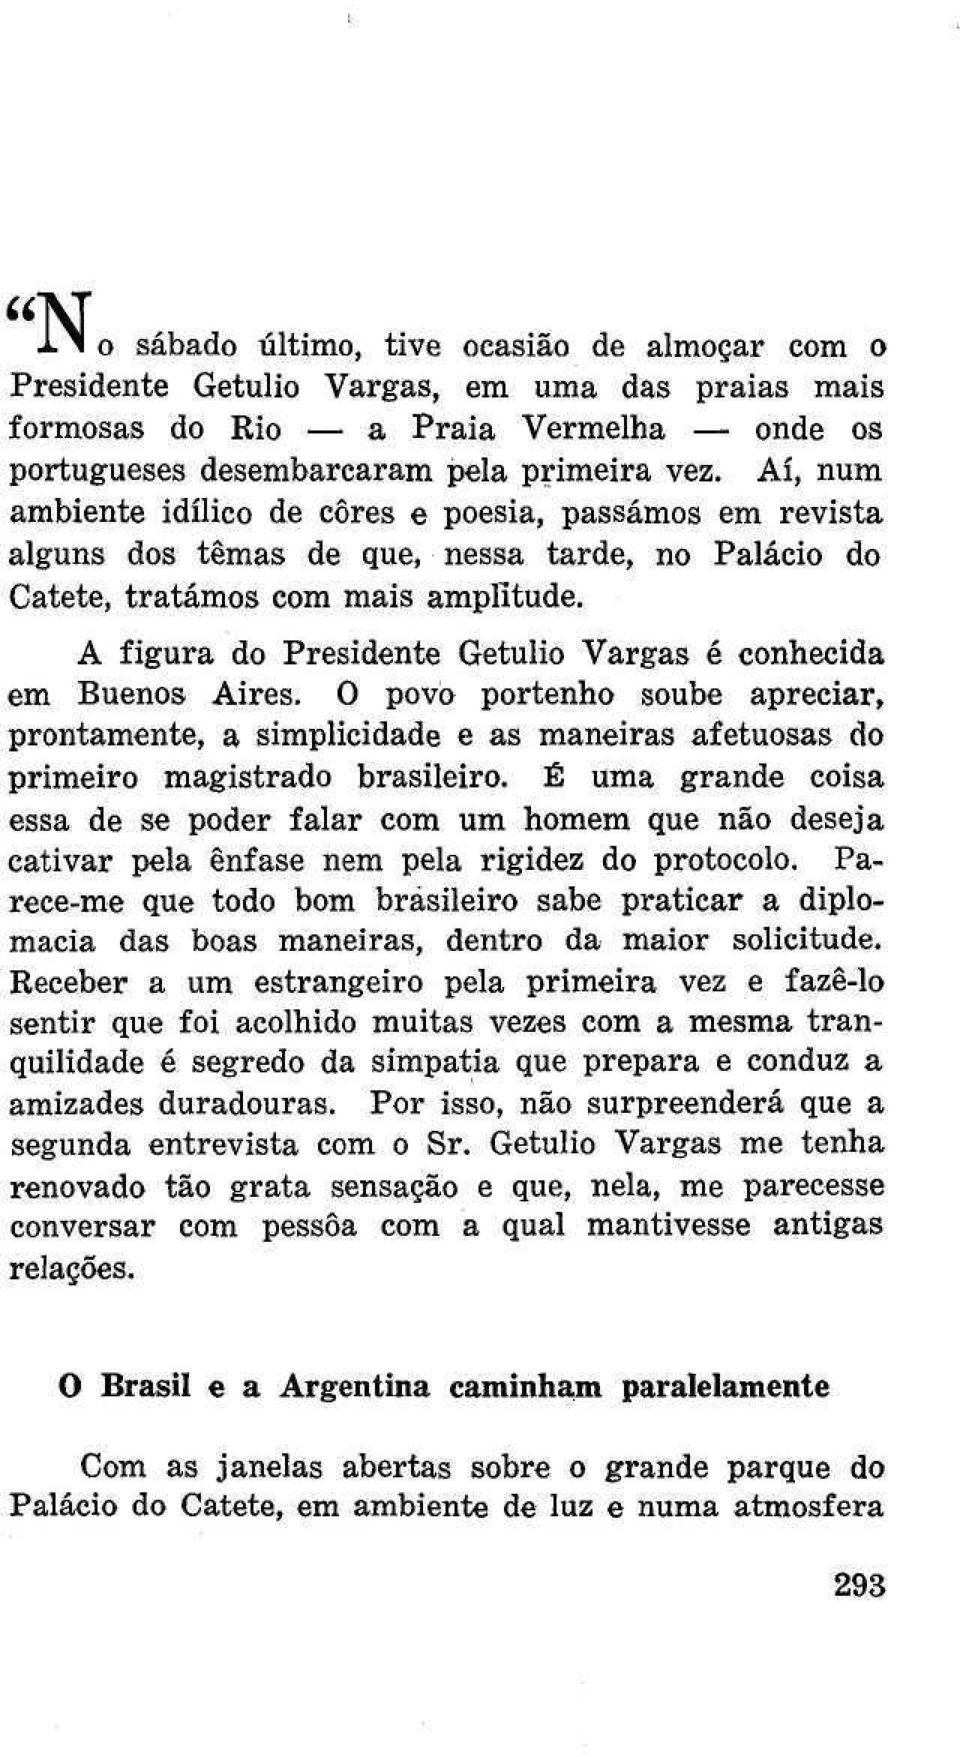 A figura do Presidente Getulio Vargas é conhecida em Buenos Aires. O povo portenho soube apreciar, prontamente, a simplicidade e as maneiras afetuosas do primeiro magistrado brasileiro.